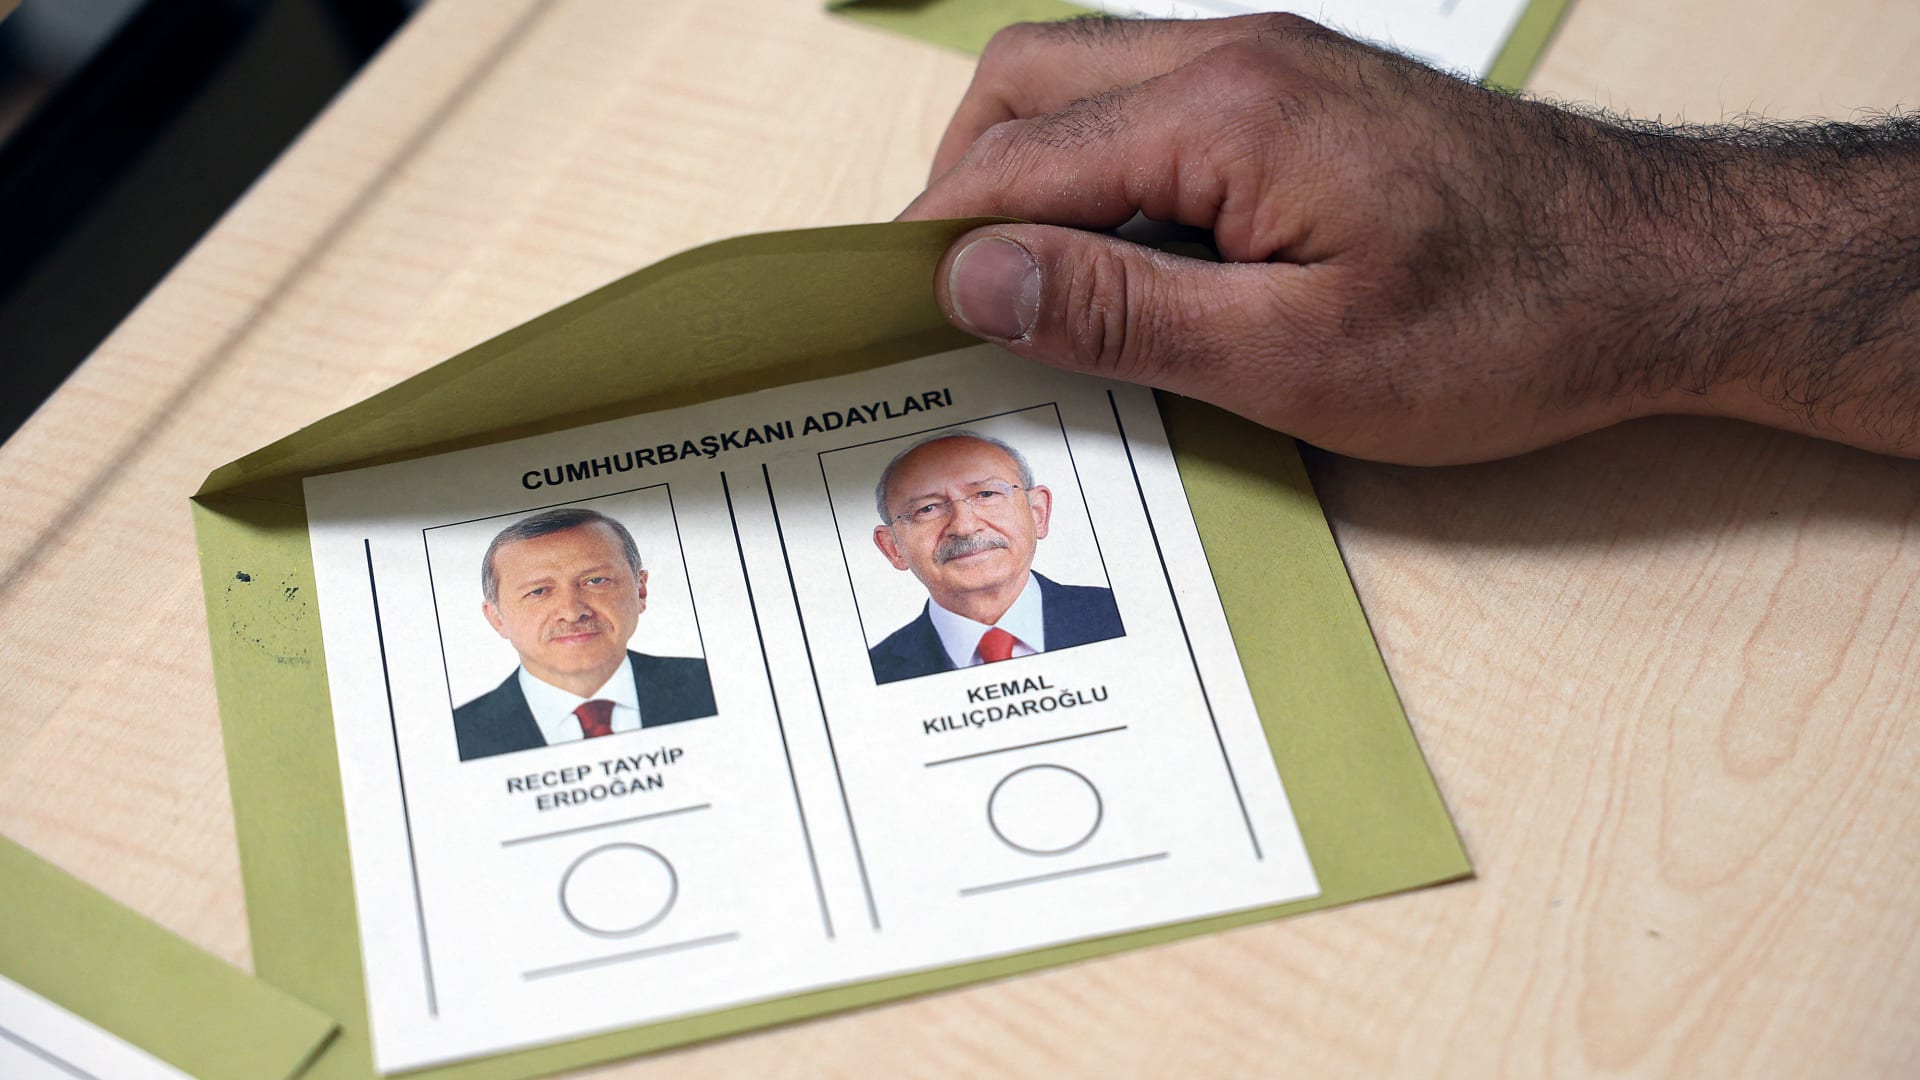 هذا ما يبدوا عليه المشهد في تركيا قبل ساعات من جولة الإعادة بانتخابات الرئاسة